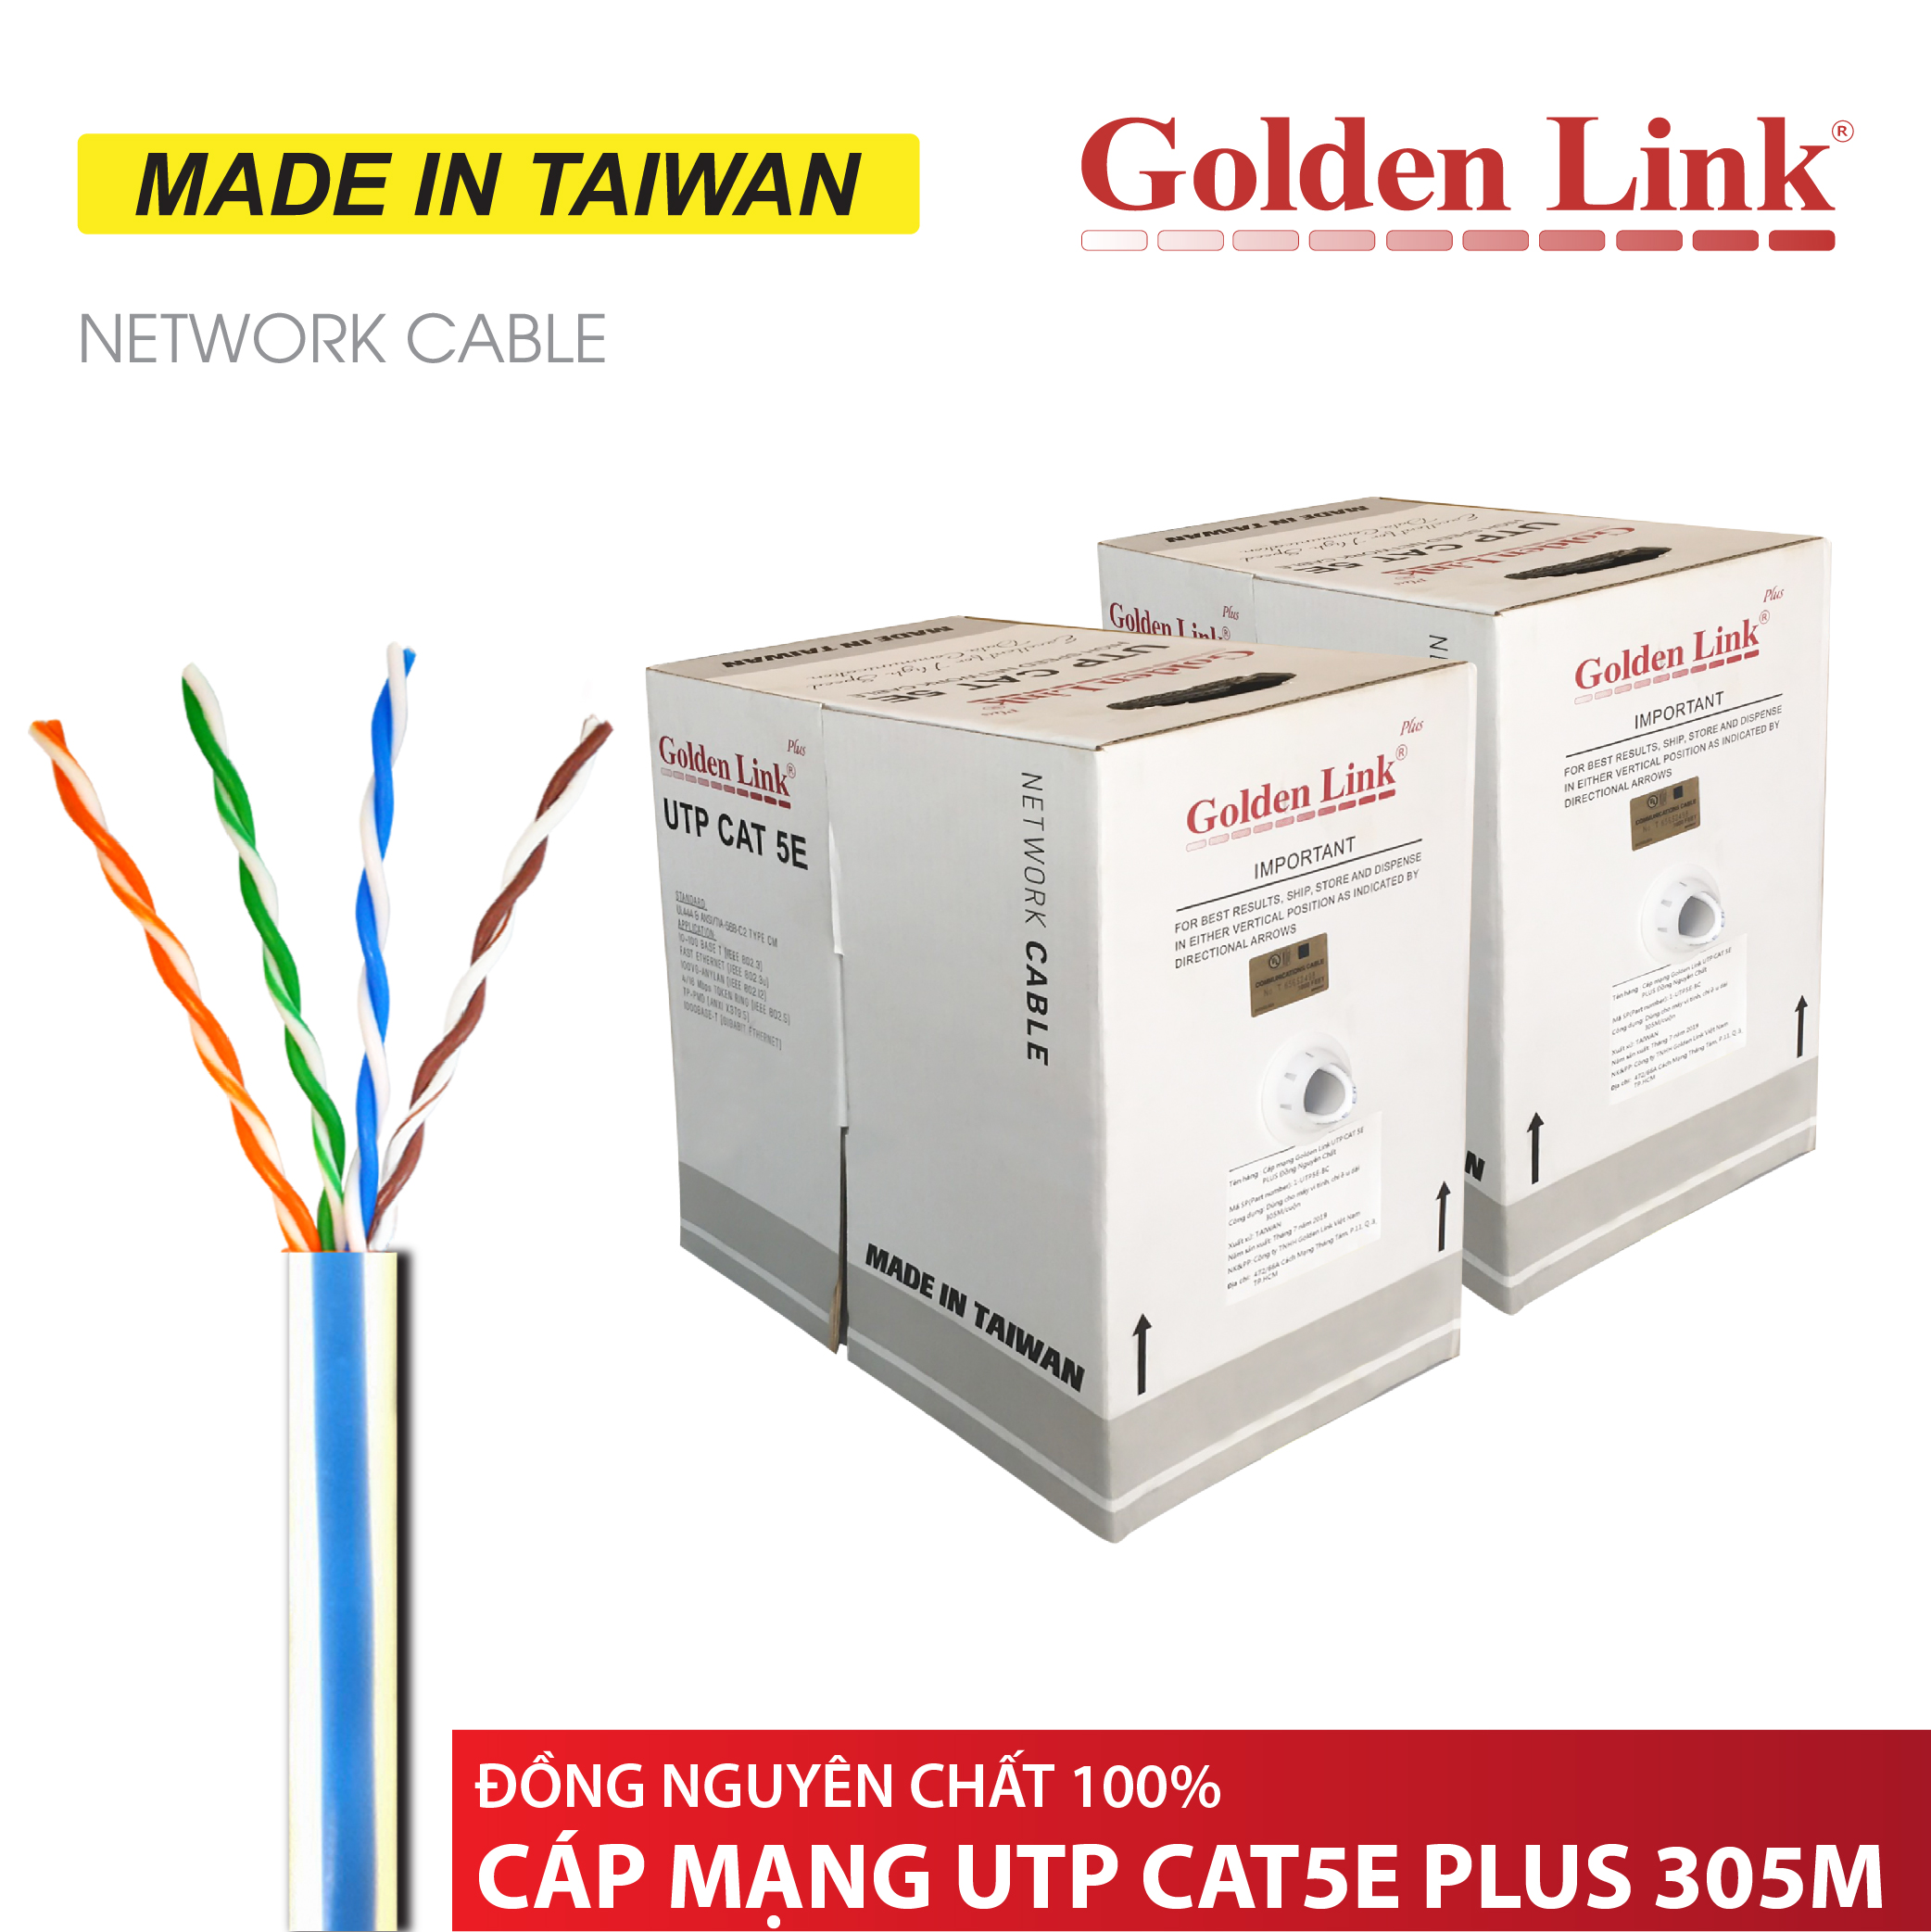 CÁP MẠNG Golden Link Plus UTP CAT5E 305M TRẮNG VIỀN XANH MADE IN TAIWAN